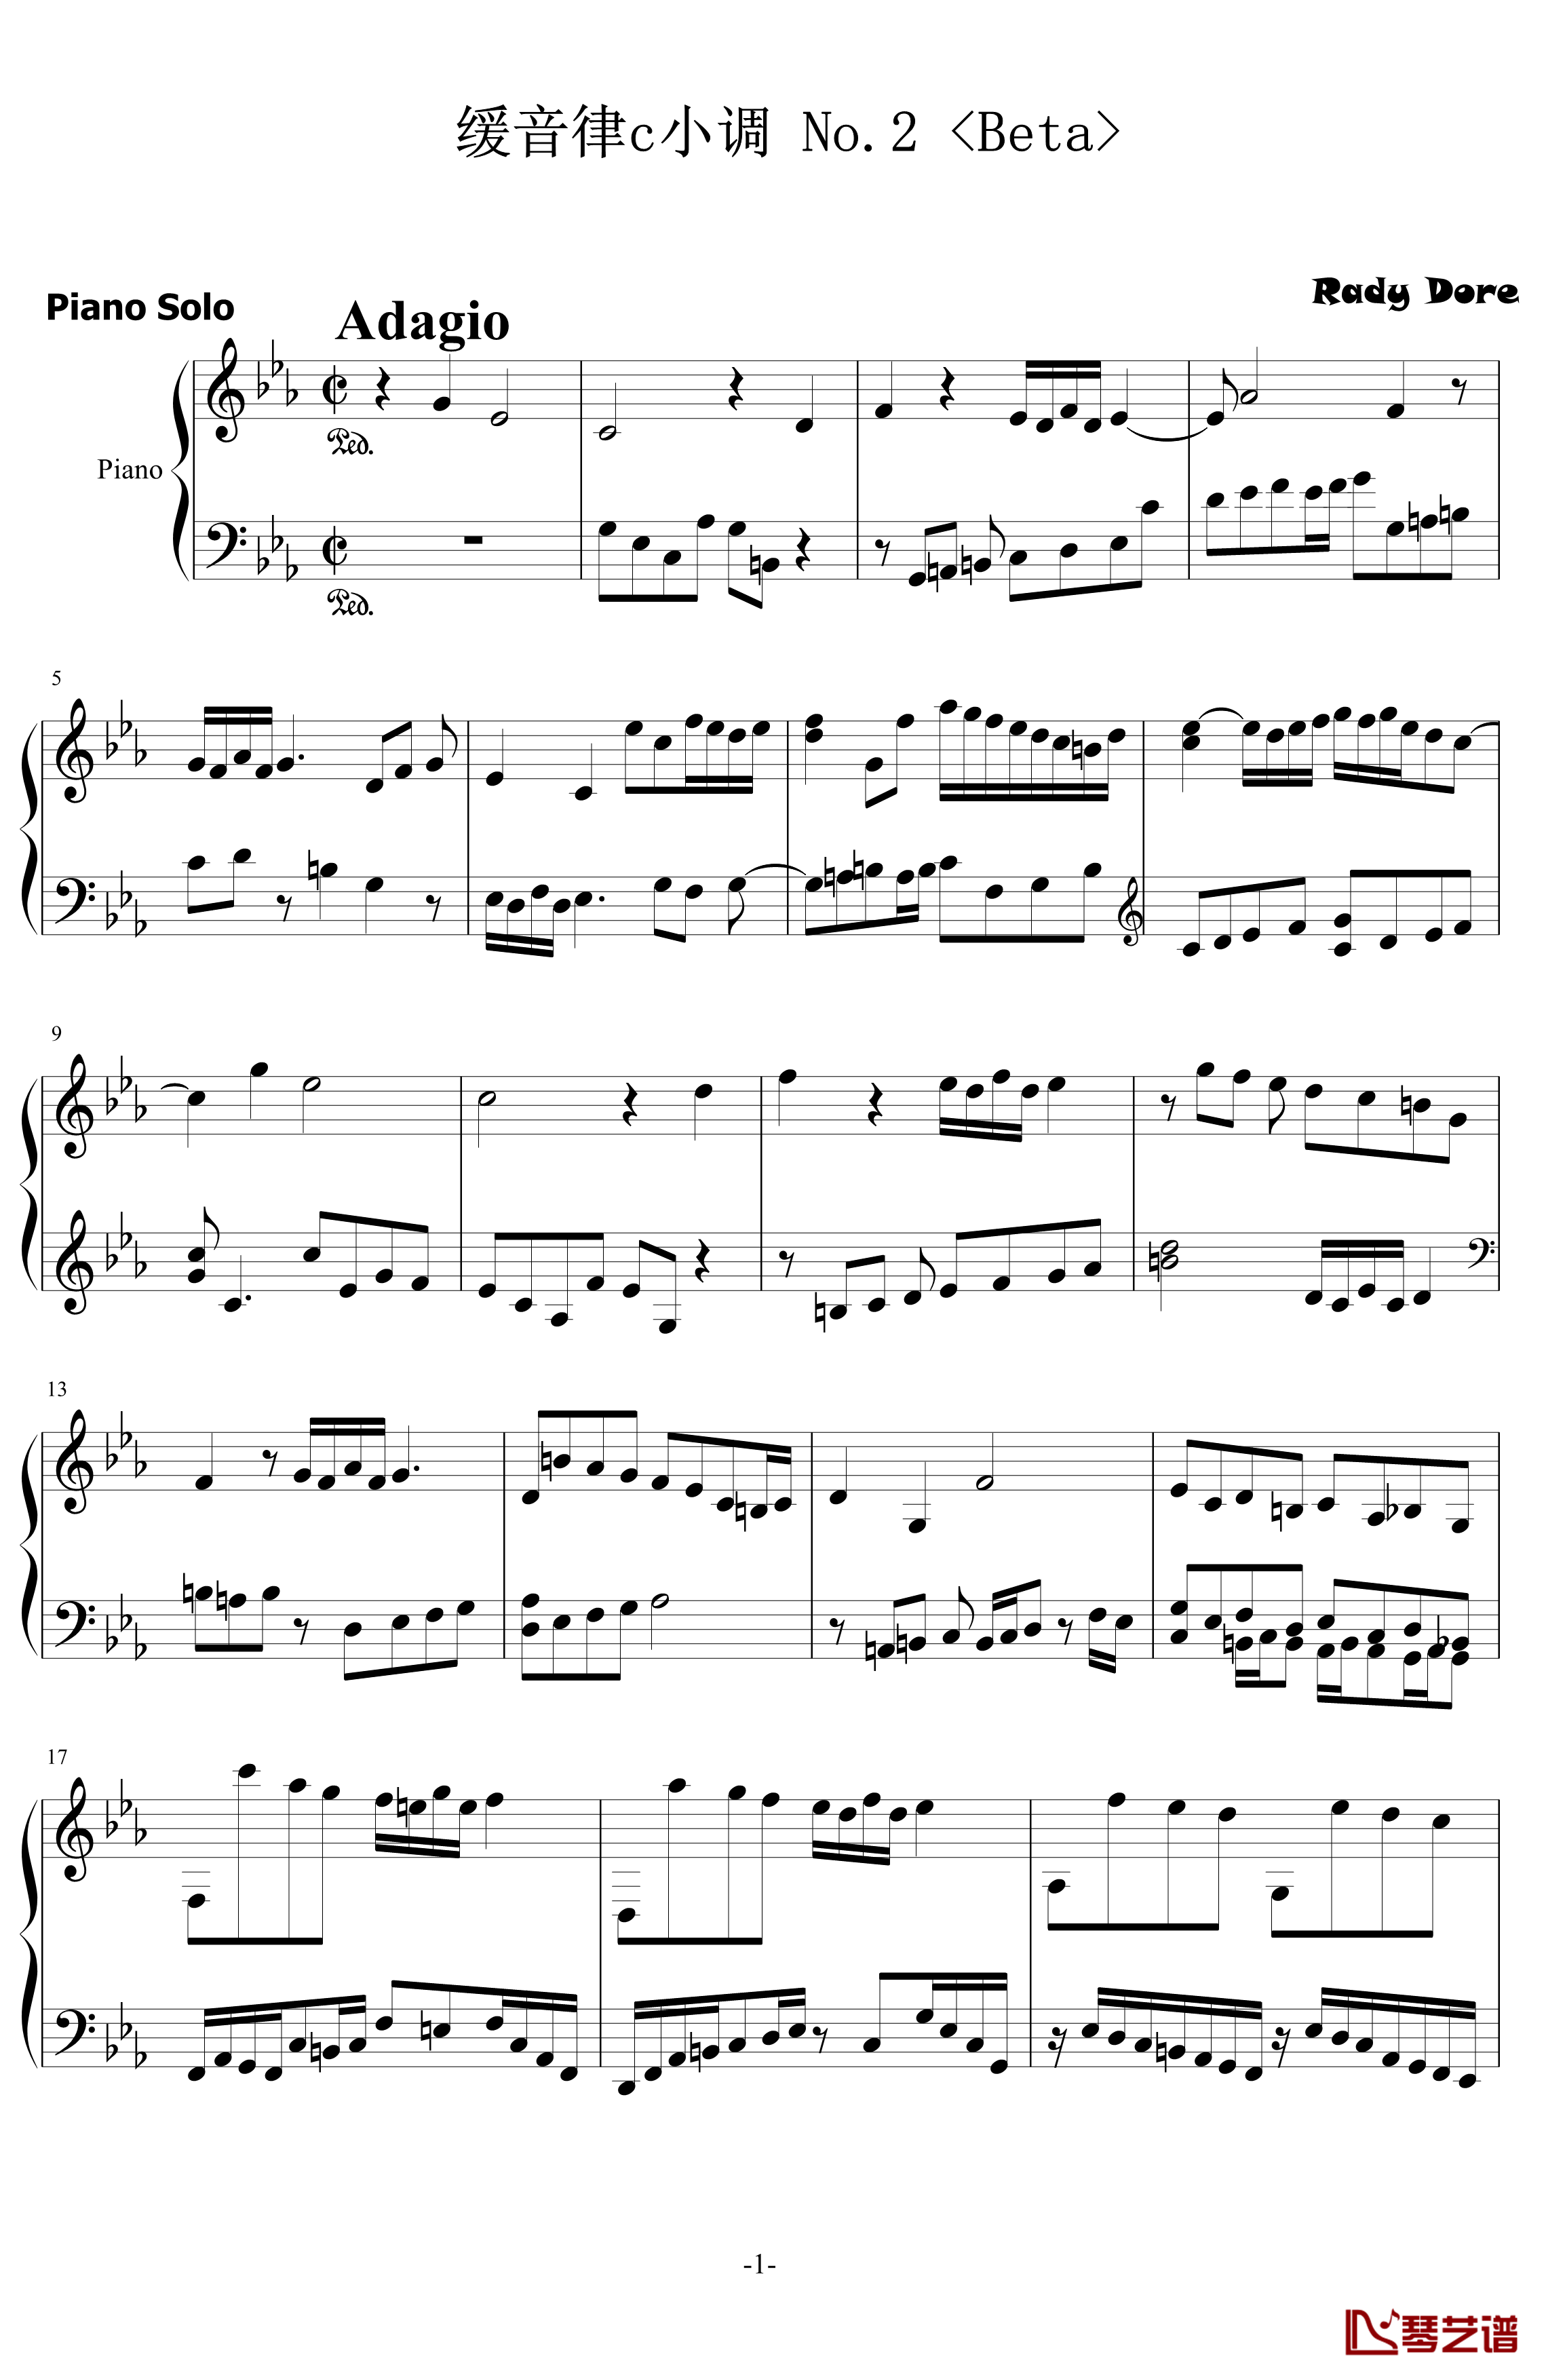 缓音律c小调No.2钢琴谱-初版-舍勒七世1